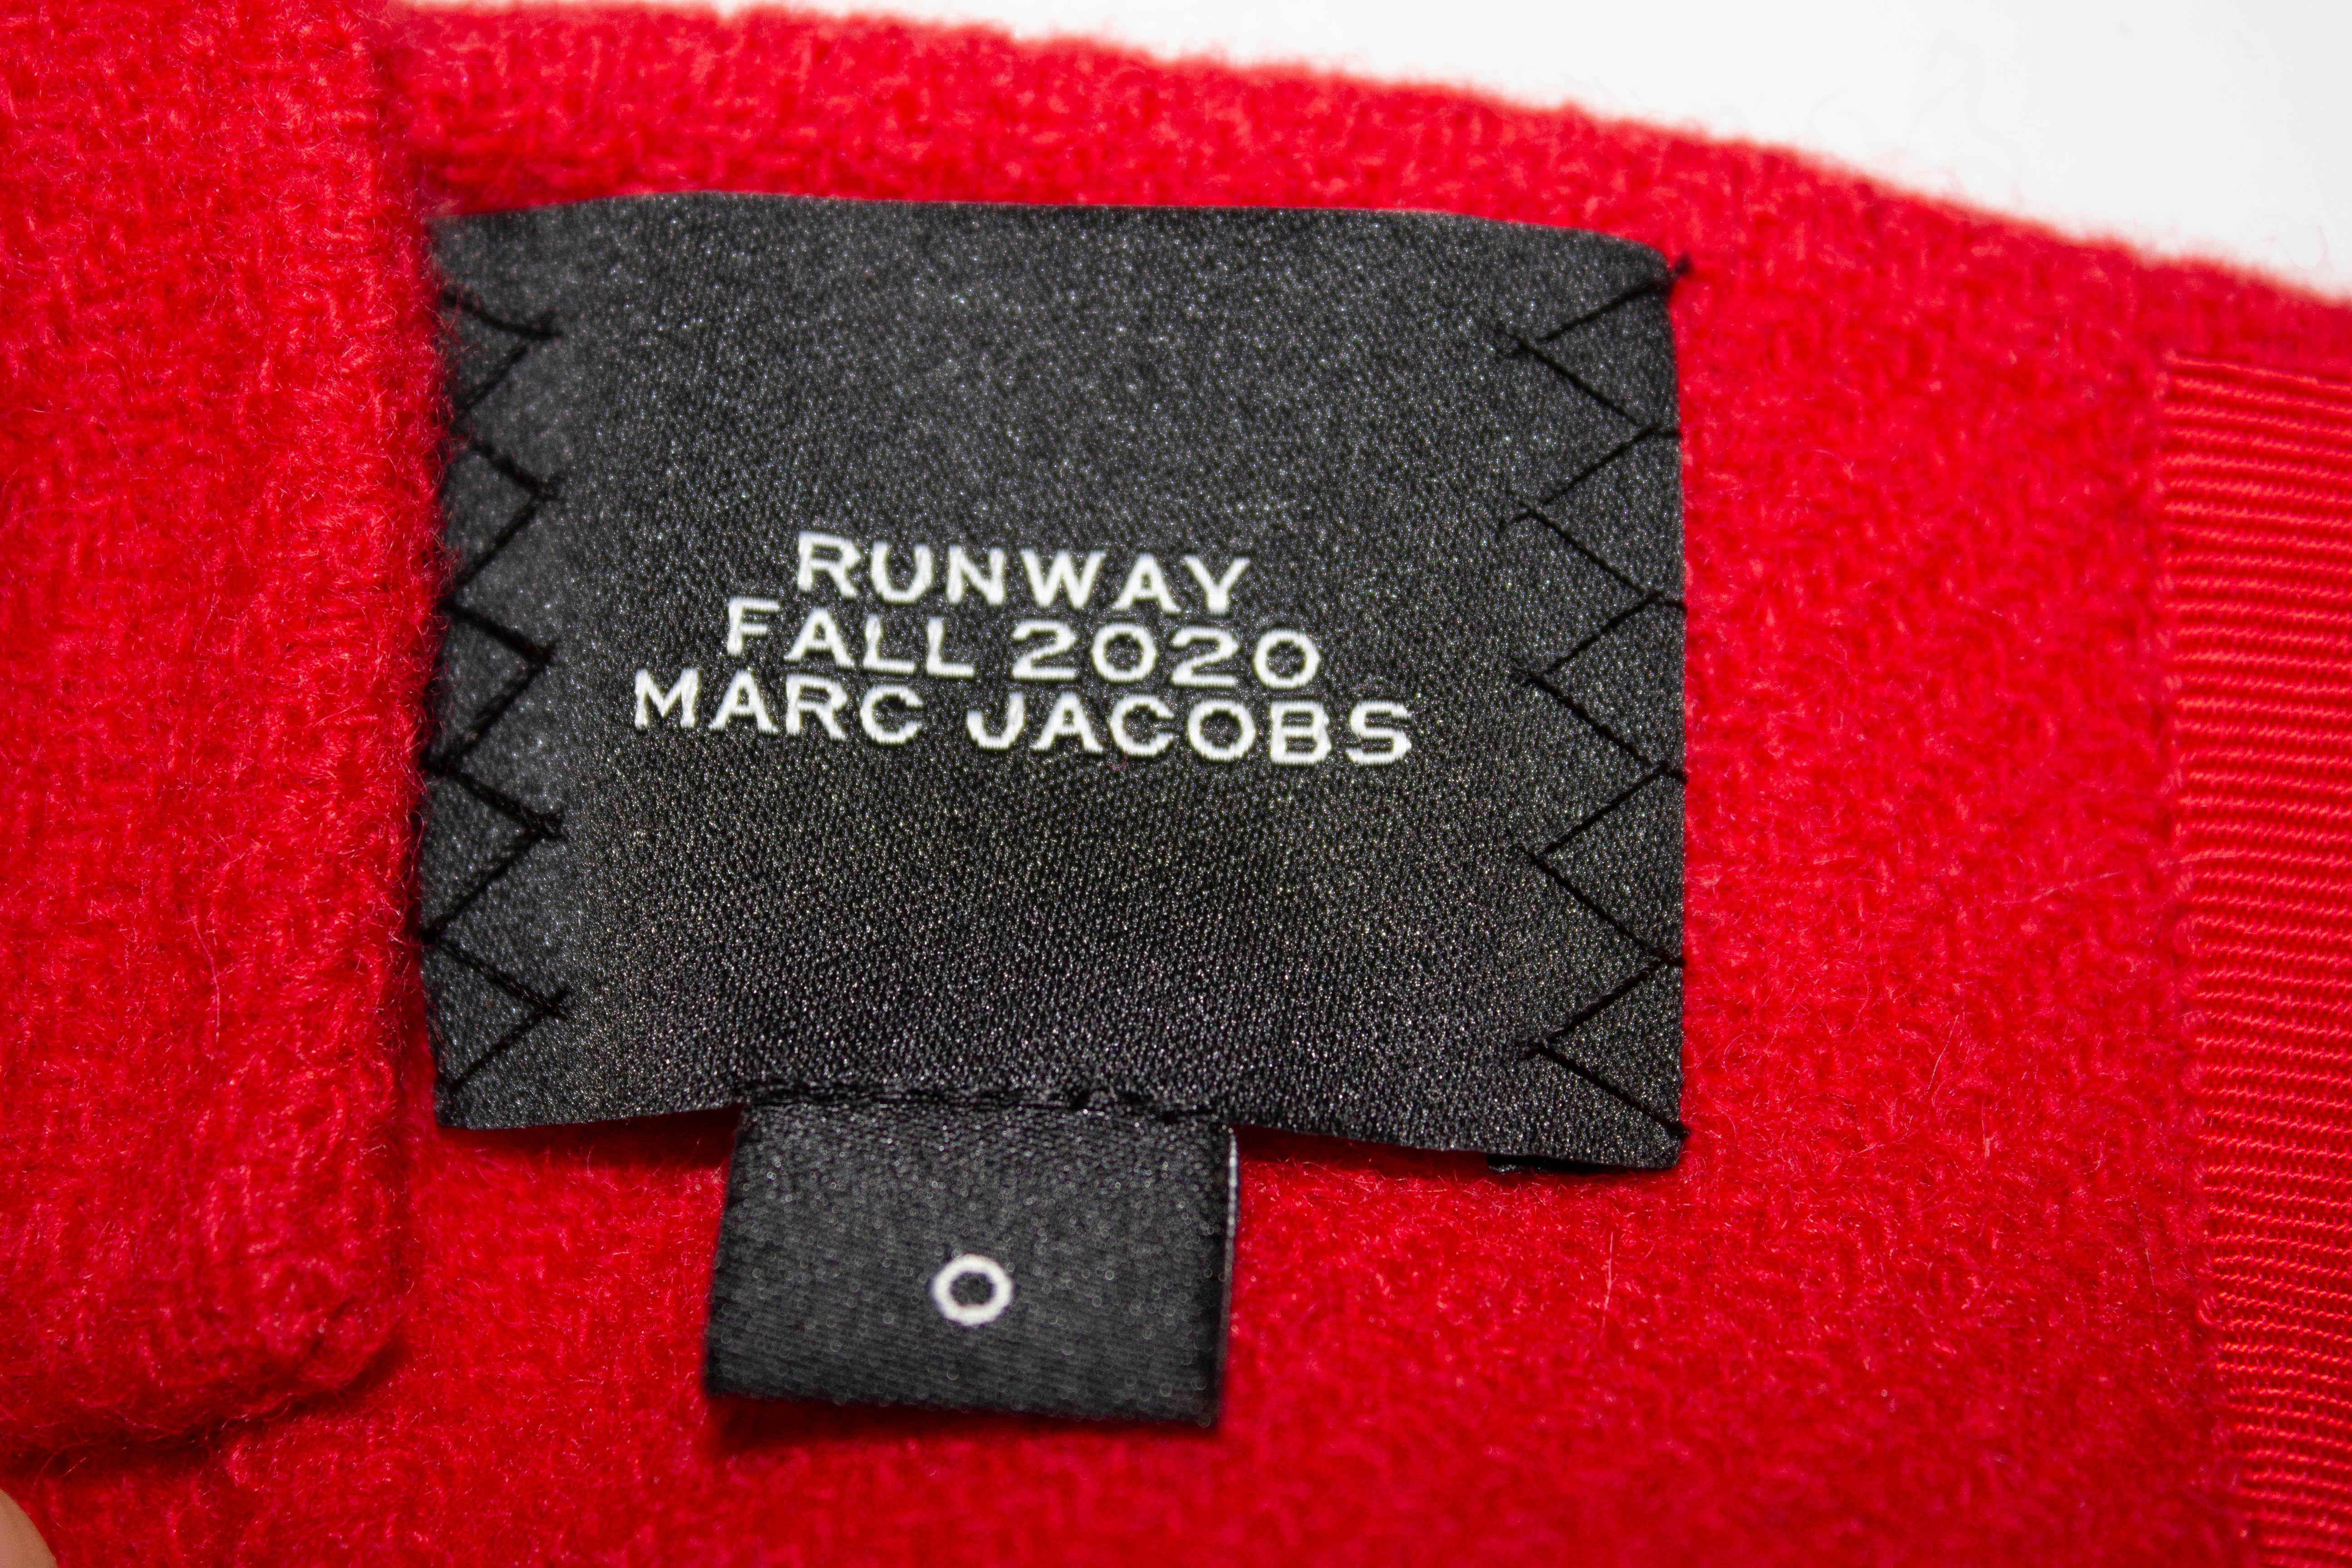 Ein schickes Oberteil für den Herbst von Marc Jacobs  In einer roten Wolle, die  das Oberteil ist Größe 0 und hat einen Haken- und Ösenverschluss. Maße: Büste 33'', Länge 13''